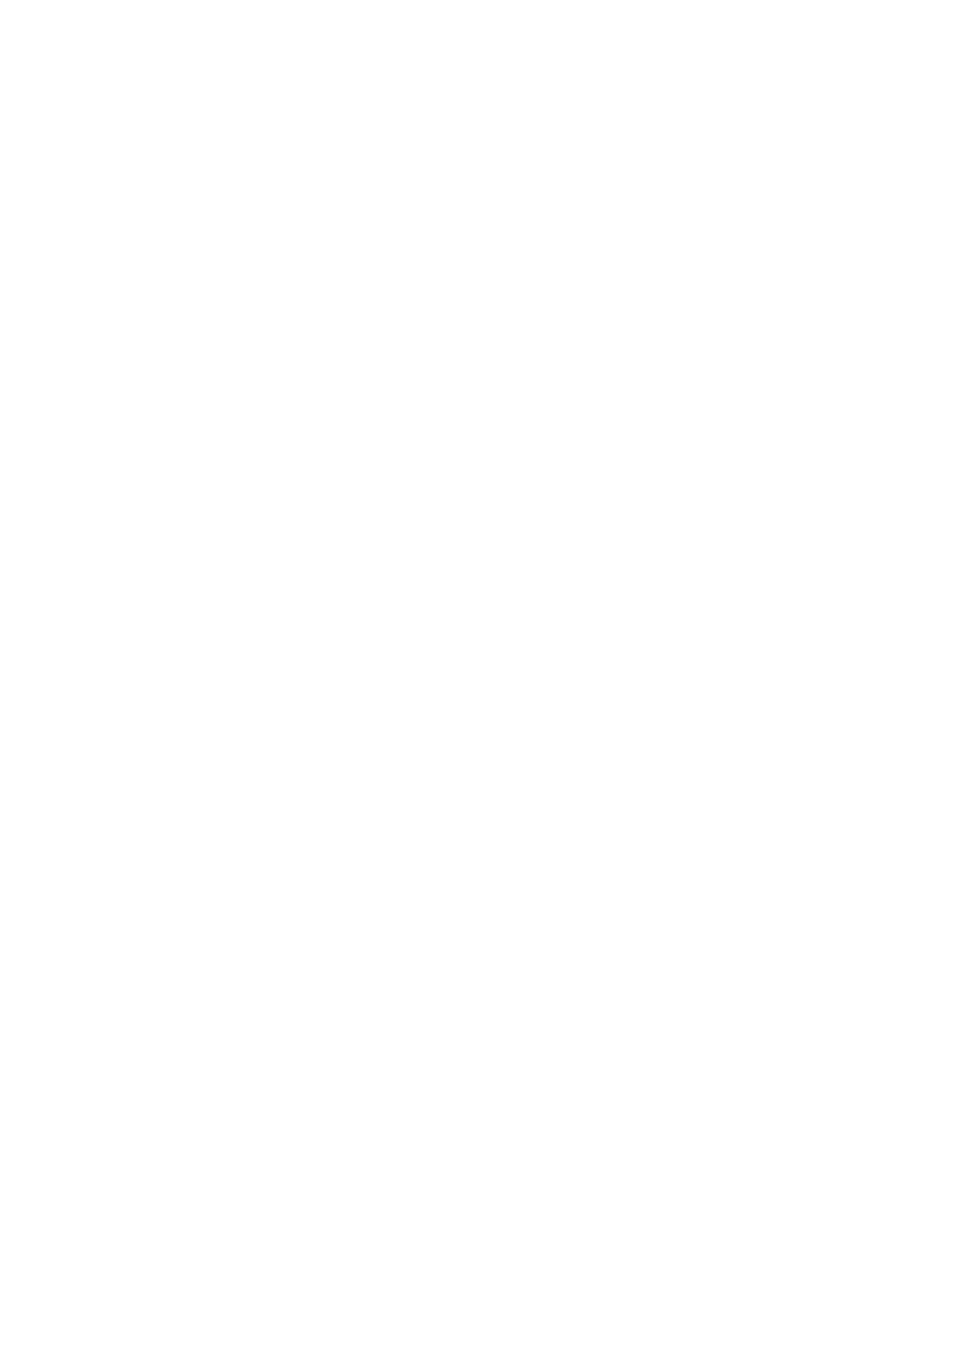 RS 12/2014 Ros analyse Varanger-KraftNett AS RS 13/2014 Protokoll fra lønnspolitisk utvalg RS 14/2014 Fullføring av Jernrosen Minnemonument 22 juli 2011 - Søknad om økonomisk bistand RS 15/2014